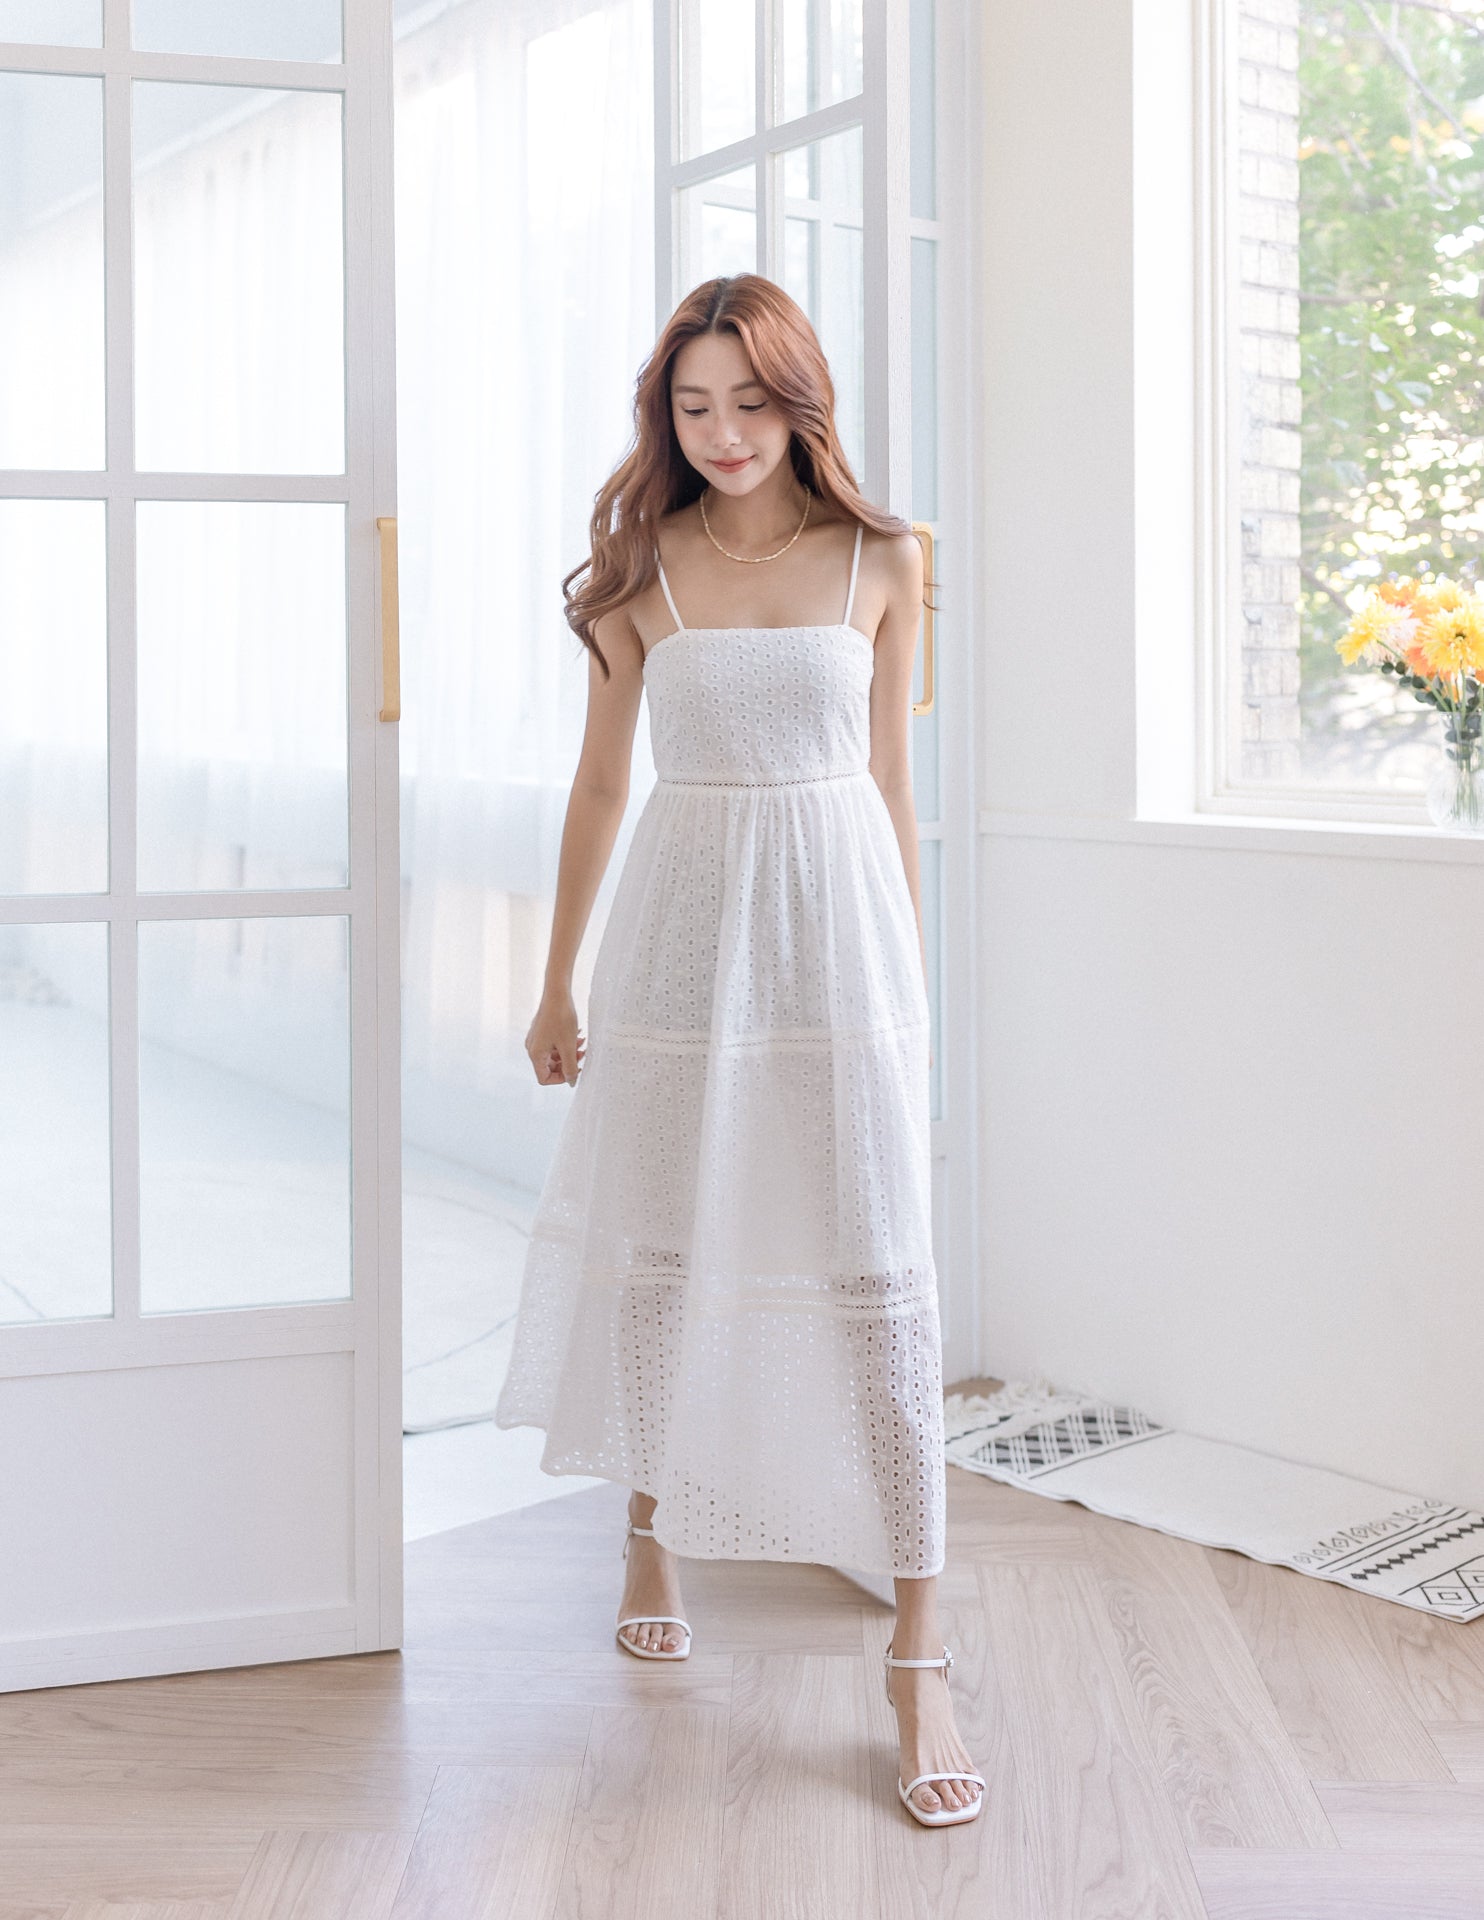 Lulu Dress in White